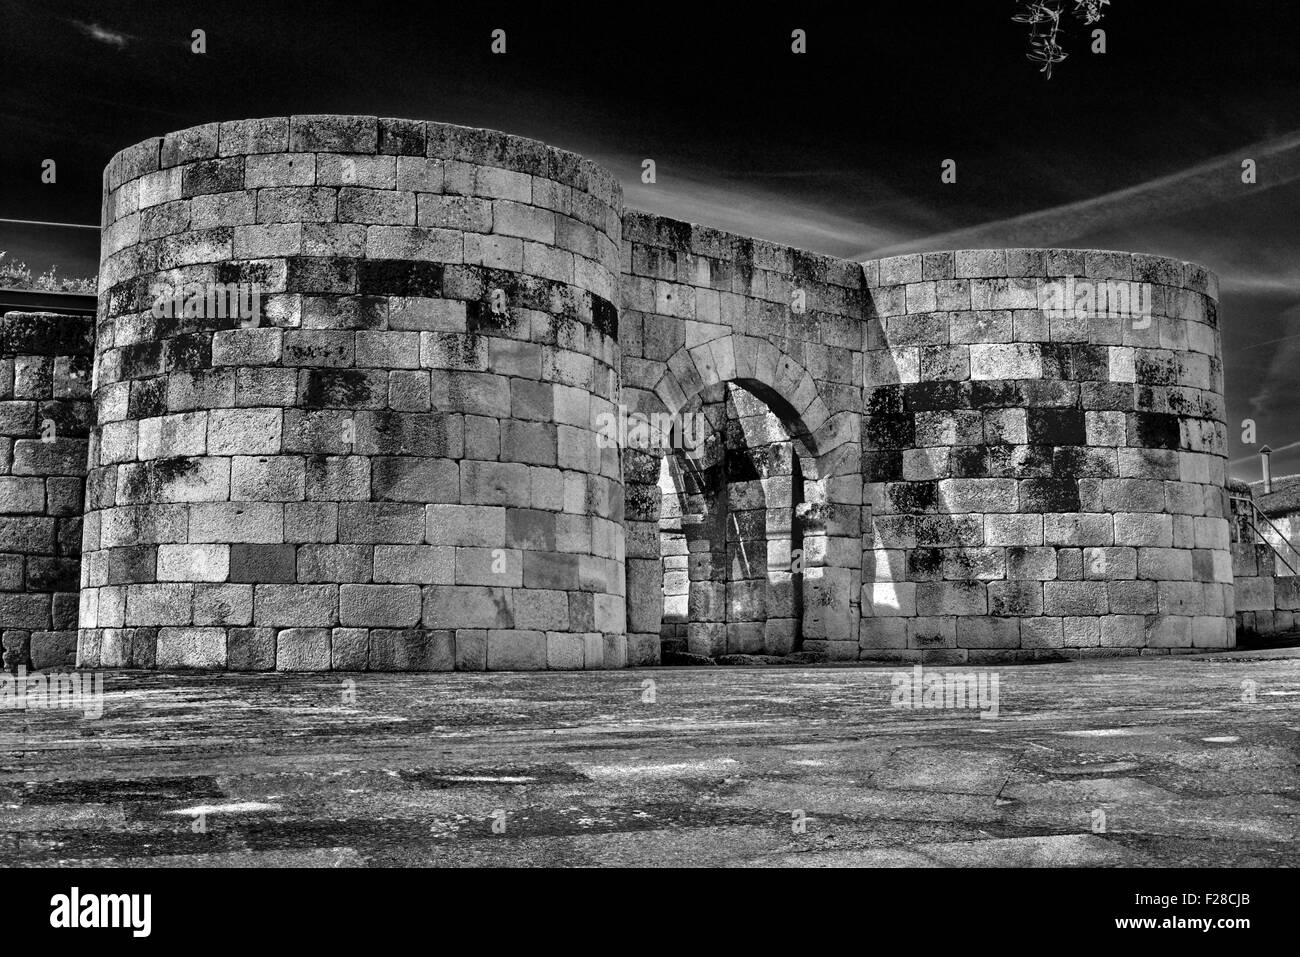 Portogallo: gateway storico dell'ex muro romano (IV secolo) in Idanha-a-Velha (bw) Foto Stock